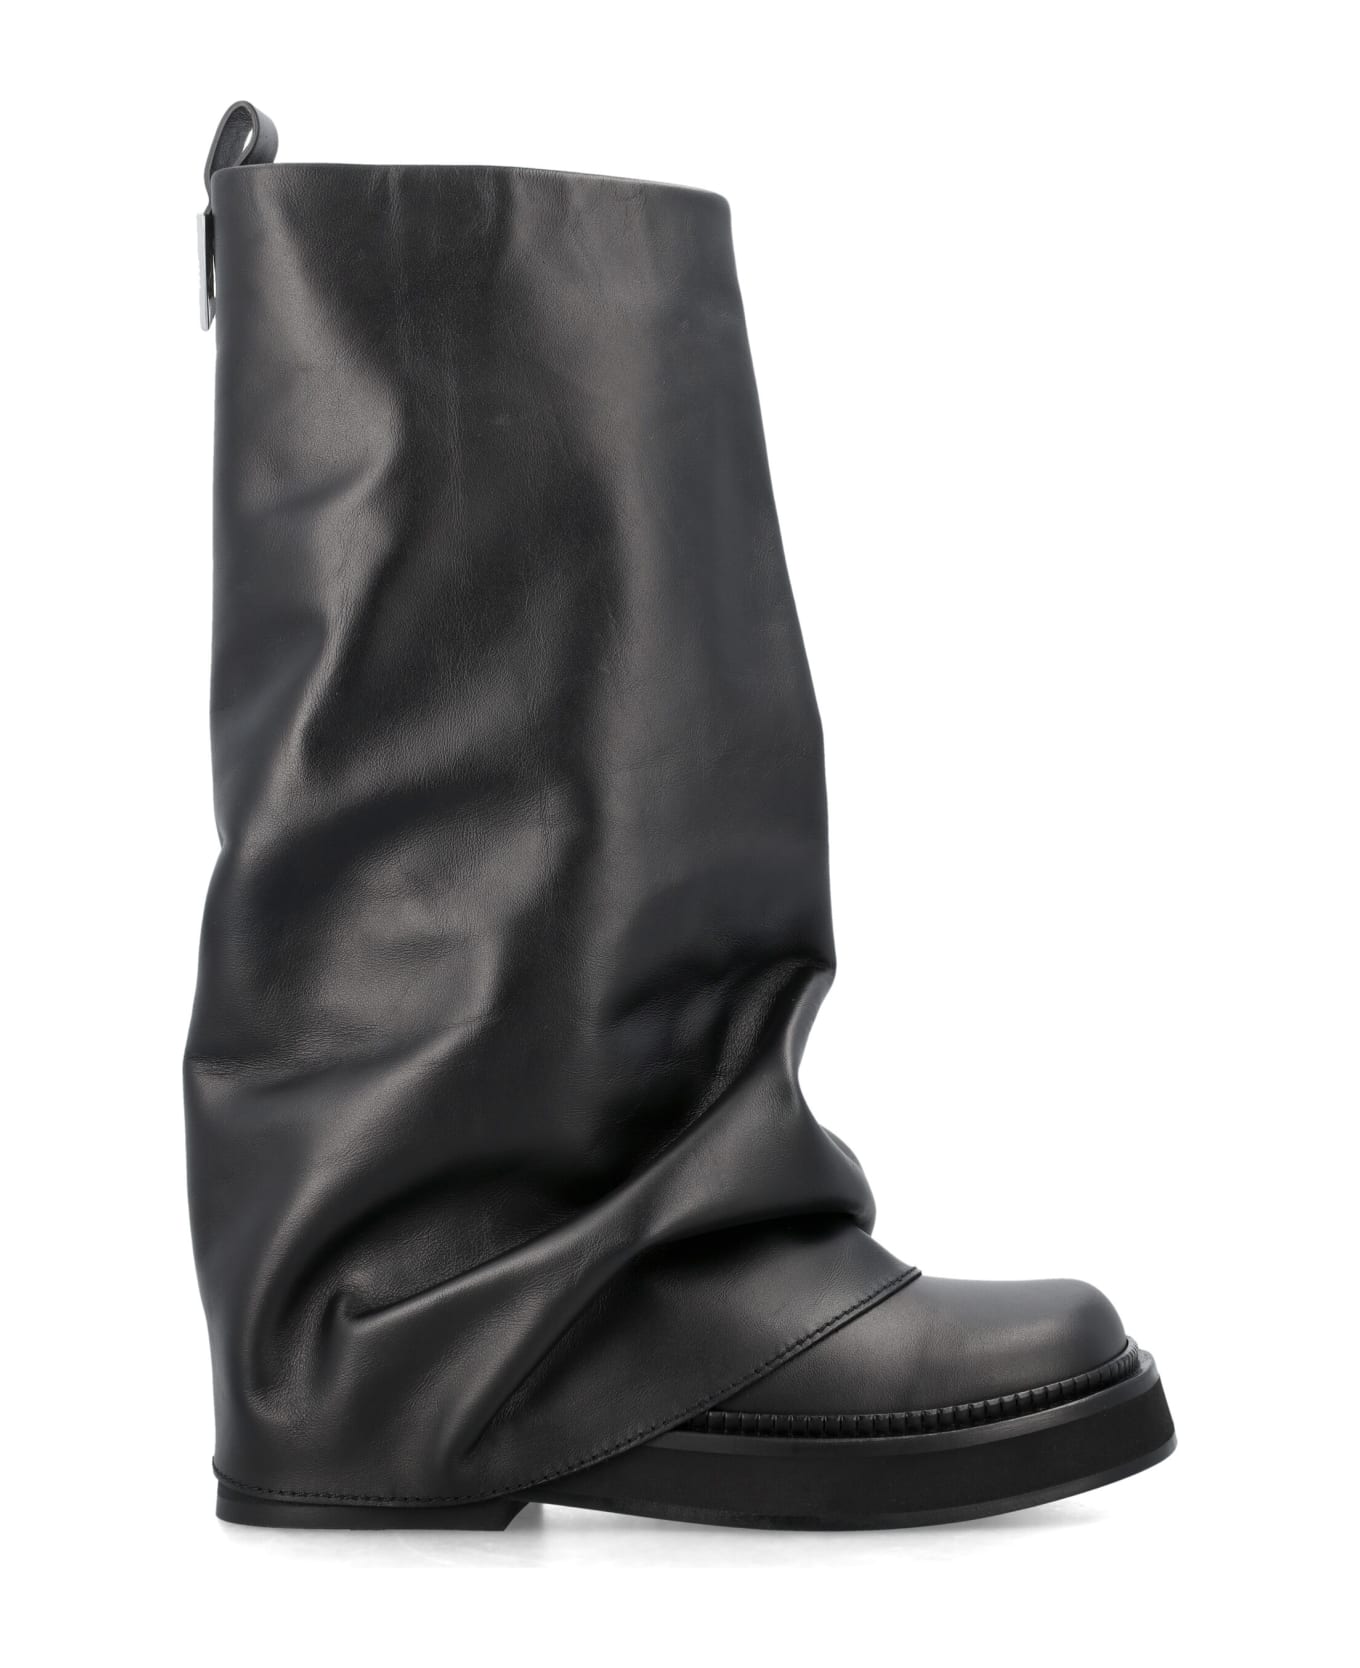 The Attico Combat Robin Boots - BLACK